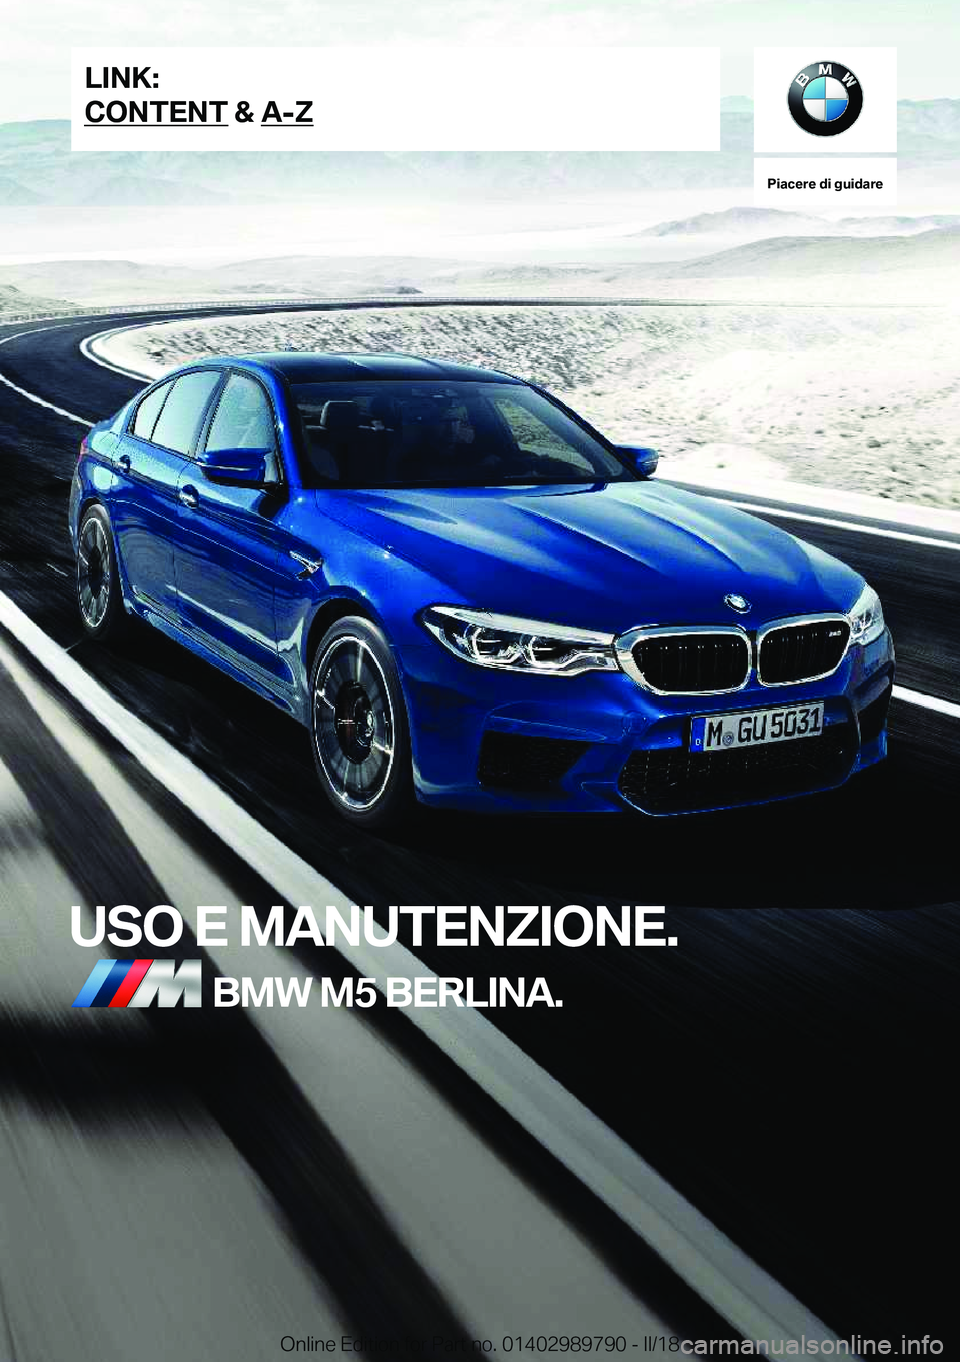 BMW M5 2018  Libretti Di Uso E manutenzione (in Italian) �P�i�a�c�e�r�e��d�i��g�u�i�d�a�r�e
�U�S�O��E��M�A�N�U�T�E�N�Z�I�O�N�E�.�B�M�W��M�5��B�E�R�L�I�N�A�.�L�I�N�K�:
�C�O�N�T�E�N�T��&��A�-�Z�O�n�l�i�n�e� �E�d�i�t�i�o�n� �f�o�r� �P�a�r�t� �n�o�.� �0